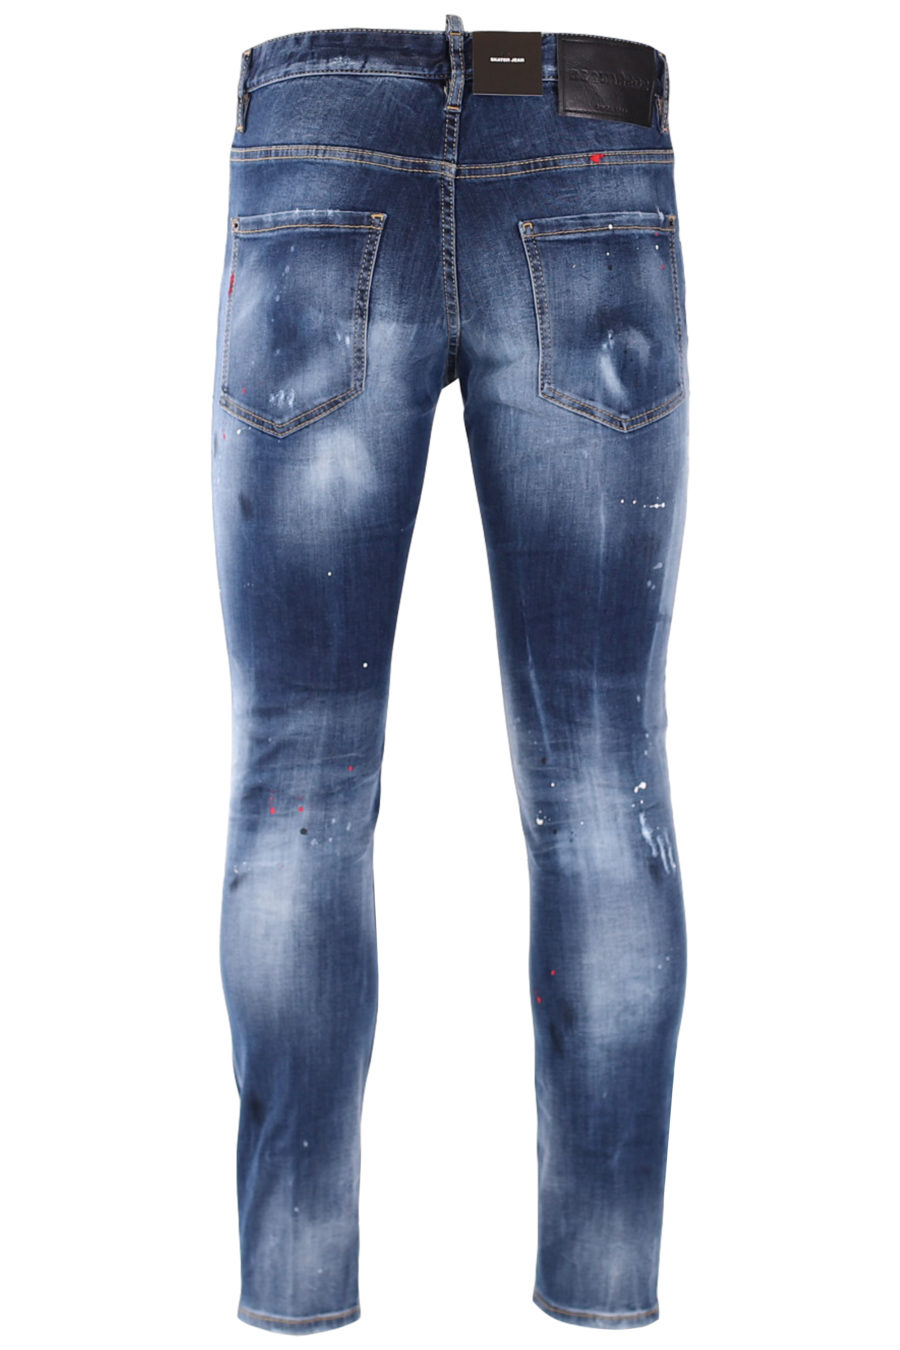 Jeans "Skater" azul con parche taches - 4c788df34d73fb9a5f3255f098d78d27f8436afc